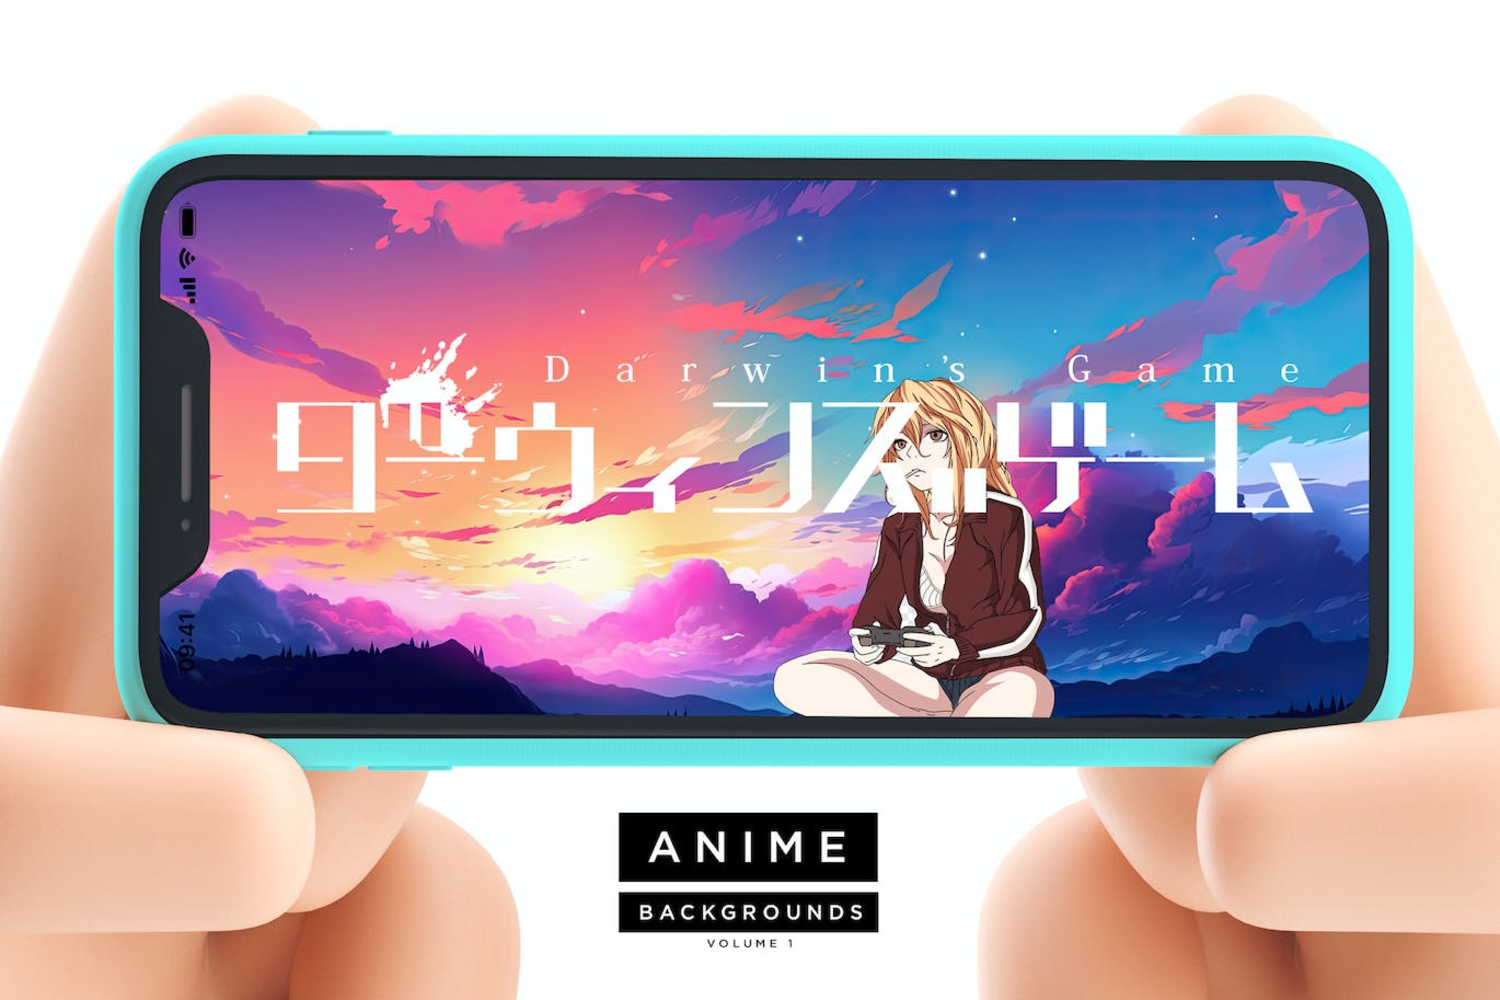 5337 绚丽时尚动漫风格云彩天空背景底纹JPG图片素材包 Anime Backgrounds by Layerform Design Co@GOOODME.COM